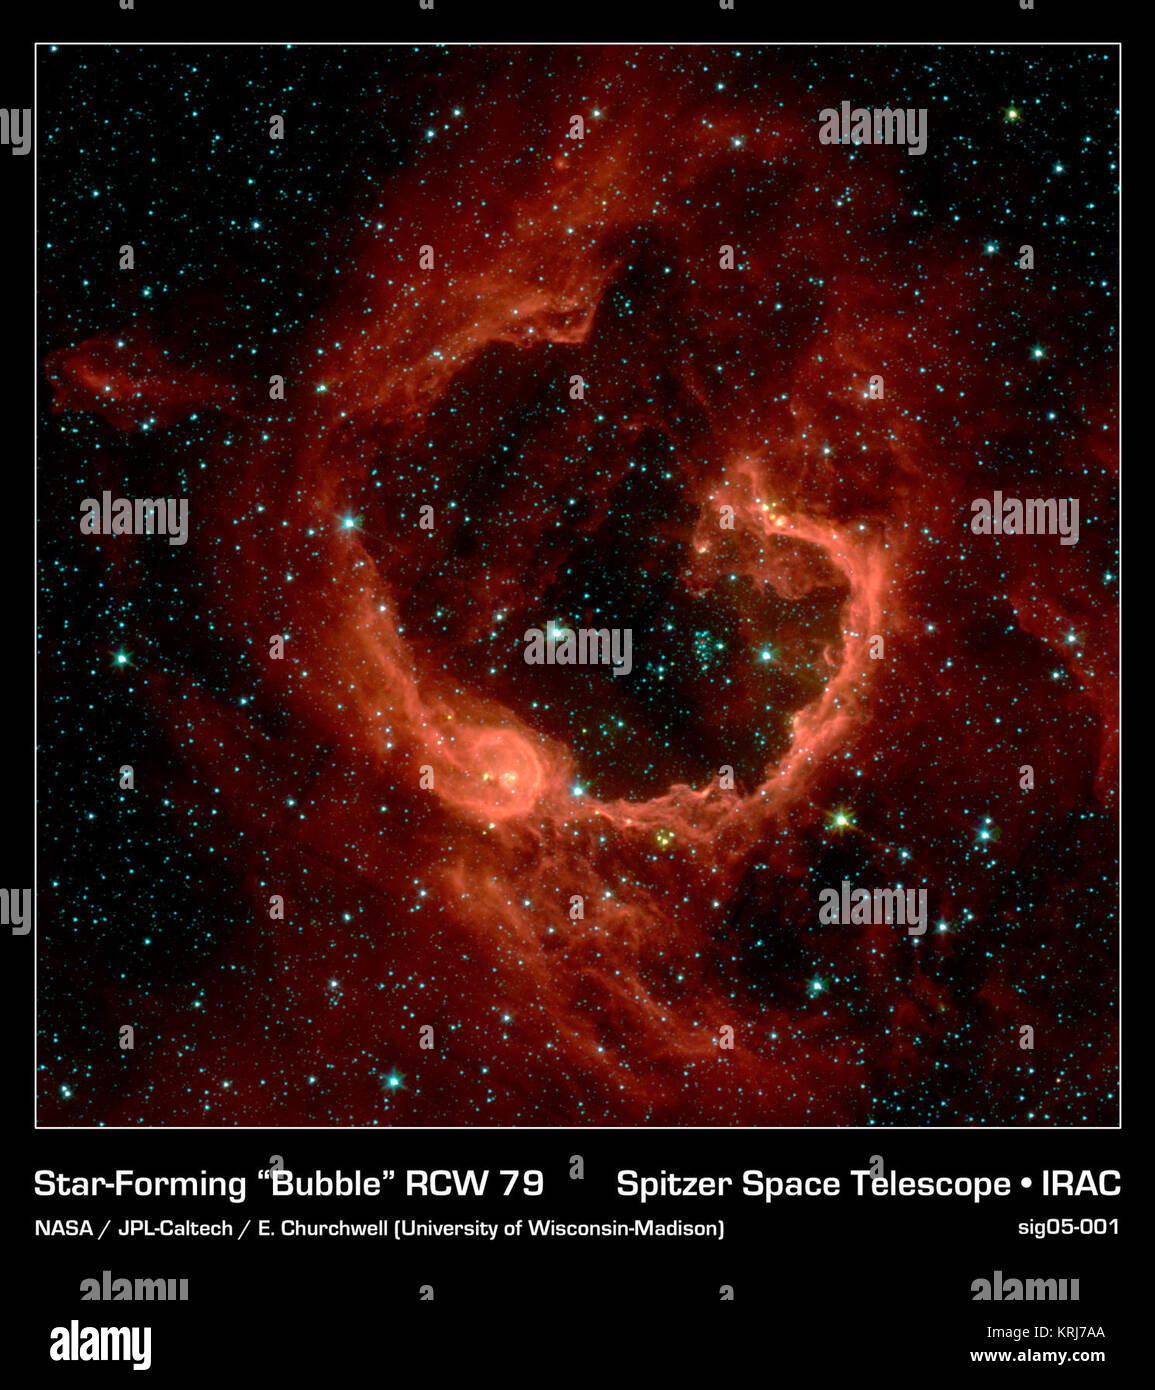 RCW 79 befindet sich in der südlichen Milchstraße, 17.200 Licht gesehen von der Erde im Sternbild Zentaur. Die Kuppel ist 70 Lichtjahre im Durchmesser, und wahrscheinlich dauerte ungefähr eine Million Jahre von der Strahlung und Wind der heiße junge Sterne zu bilden. Der Ballon von Gas und Staub ist ein Beispiel der stimulierten die Entstehung von Sternen. Solche Sterne werden geboren, wenn die heiße Blase in das interstellare Gas und Staub um es erweitert. RCW79 hat mindestens zwei Gruppen von Neue Sterne am Rand der grossen Blase hervorgebracht. Einige sind sichtbar, in den kleinen Blase in der unteren linken Ecke. Eine weitere Gruppe von baby Sterne appea Stockfoto